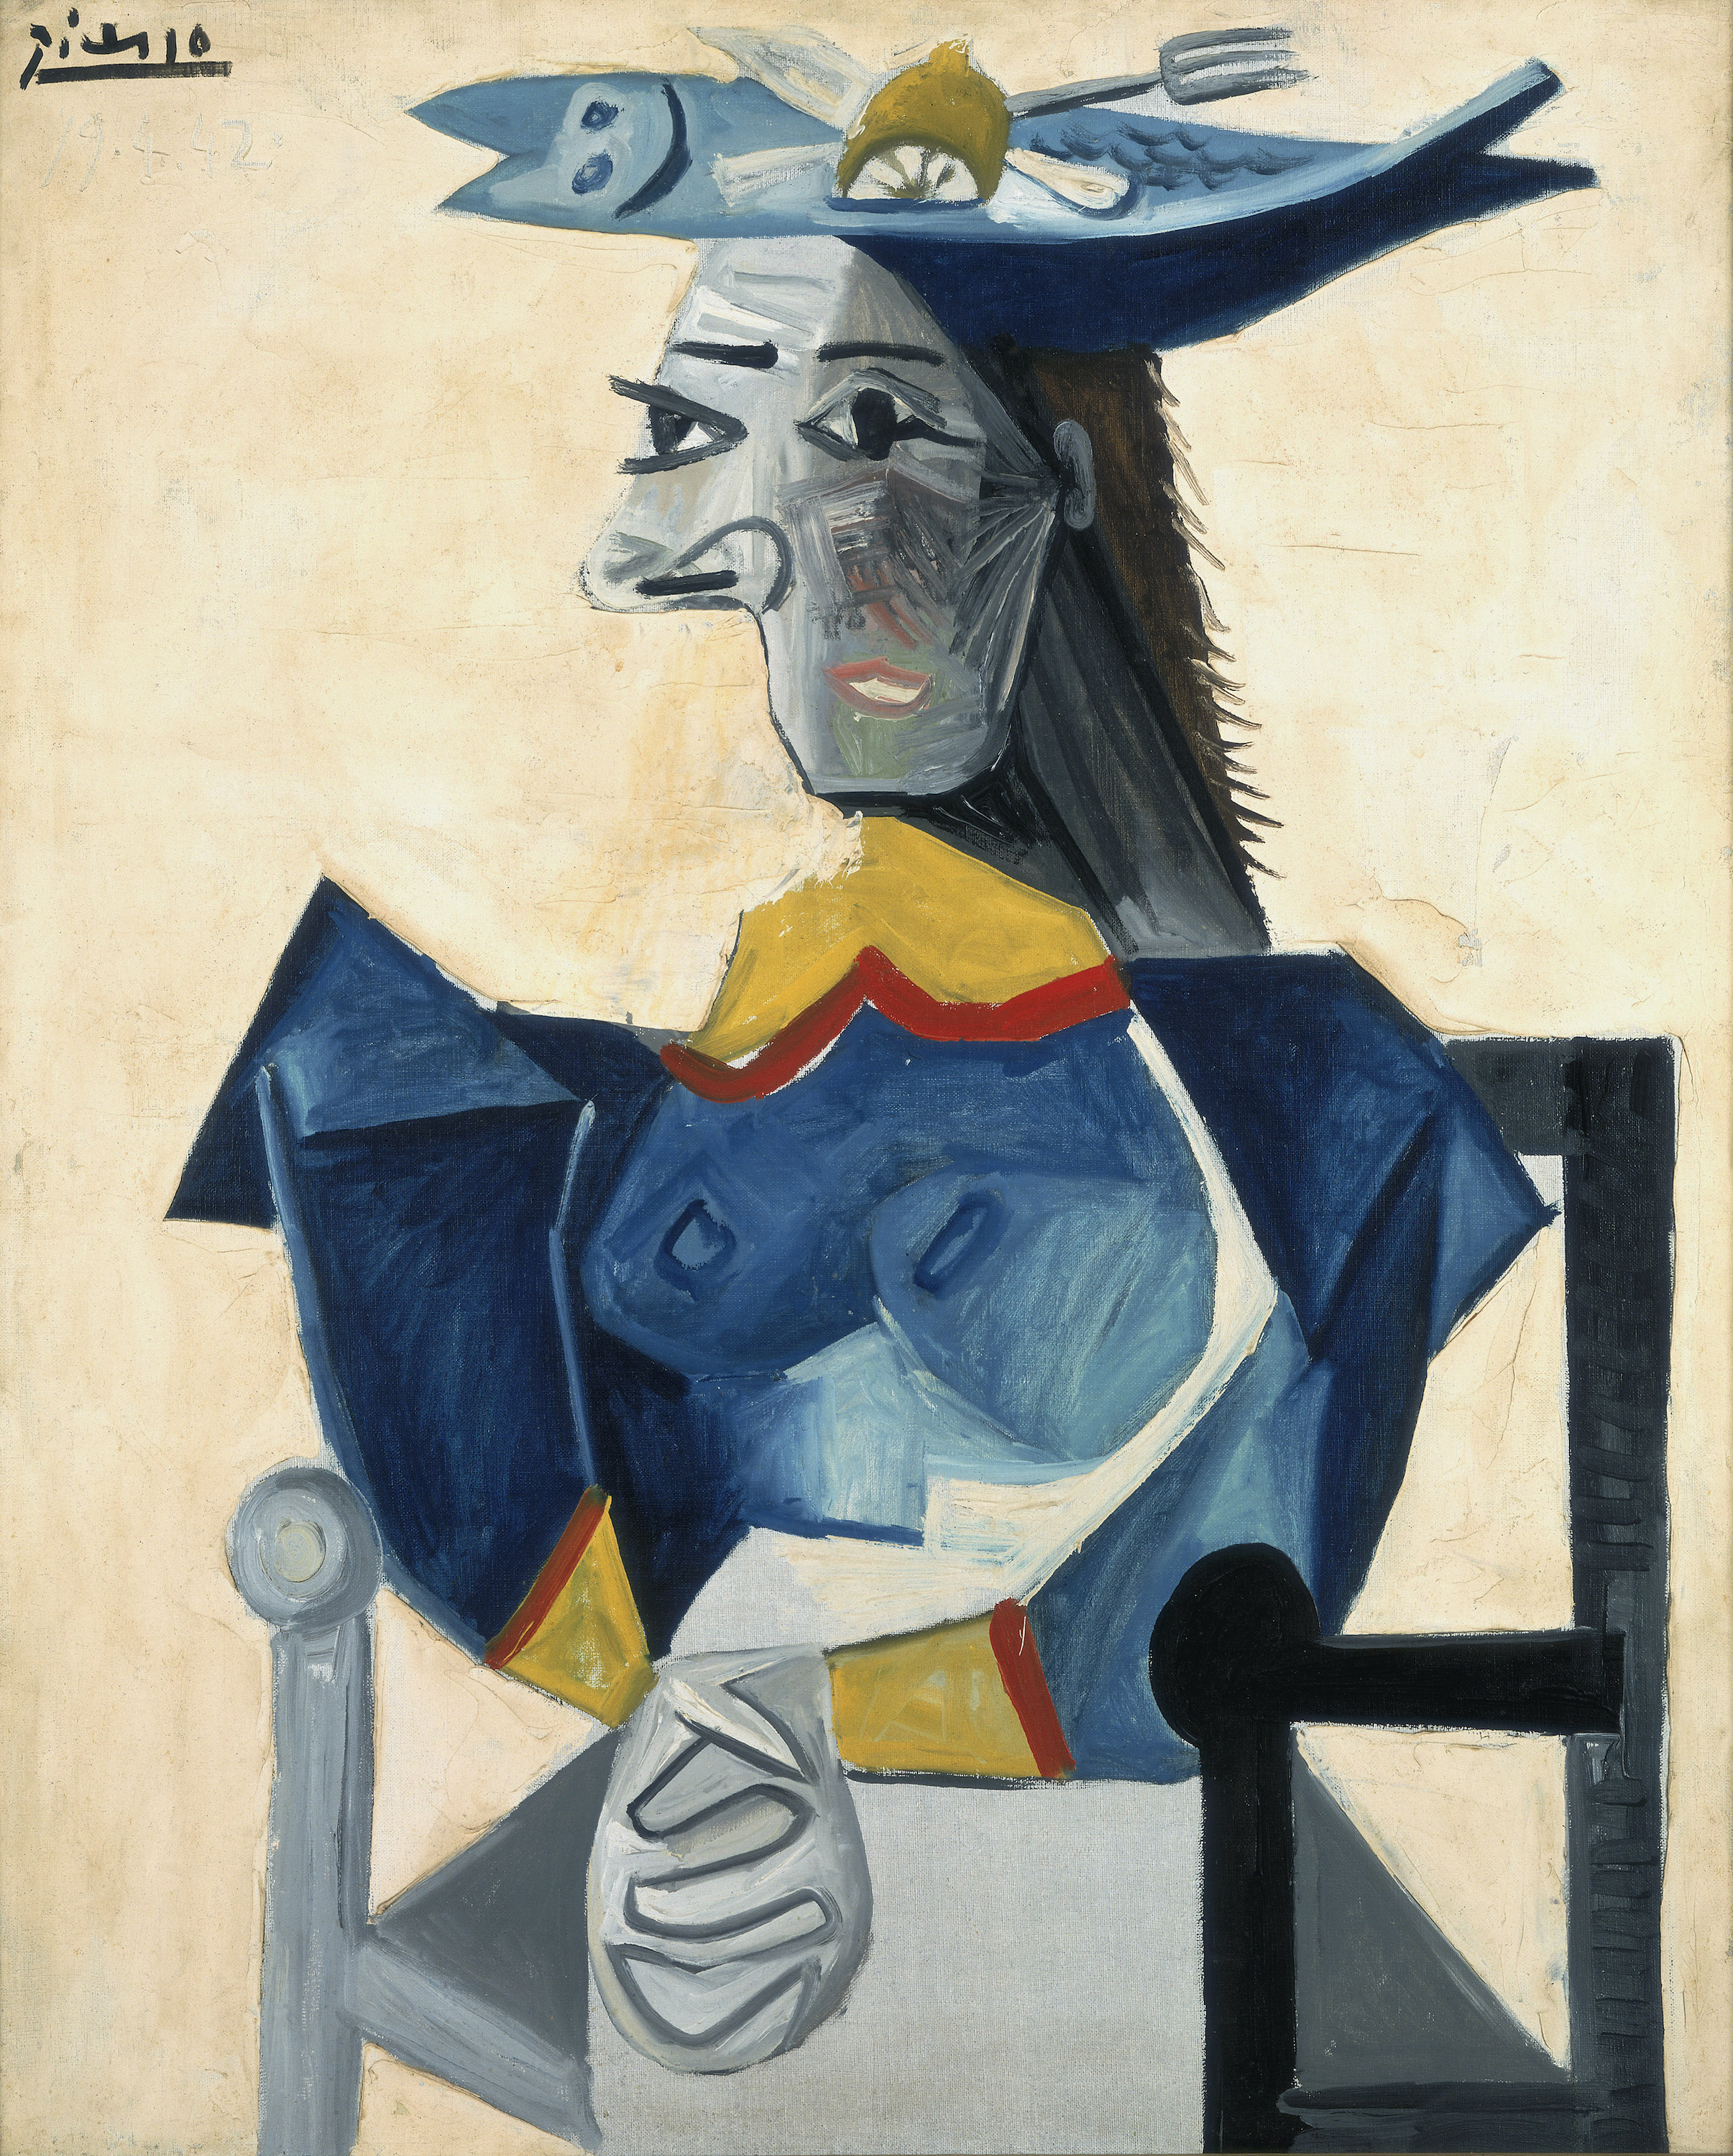 魚の帽子を被り坐せる女 by Pablo Picasso - 1942年 - 123 x 103.5 cm 